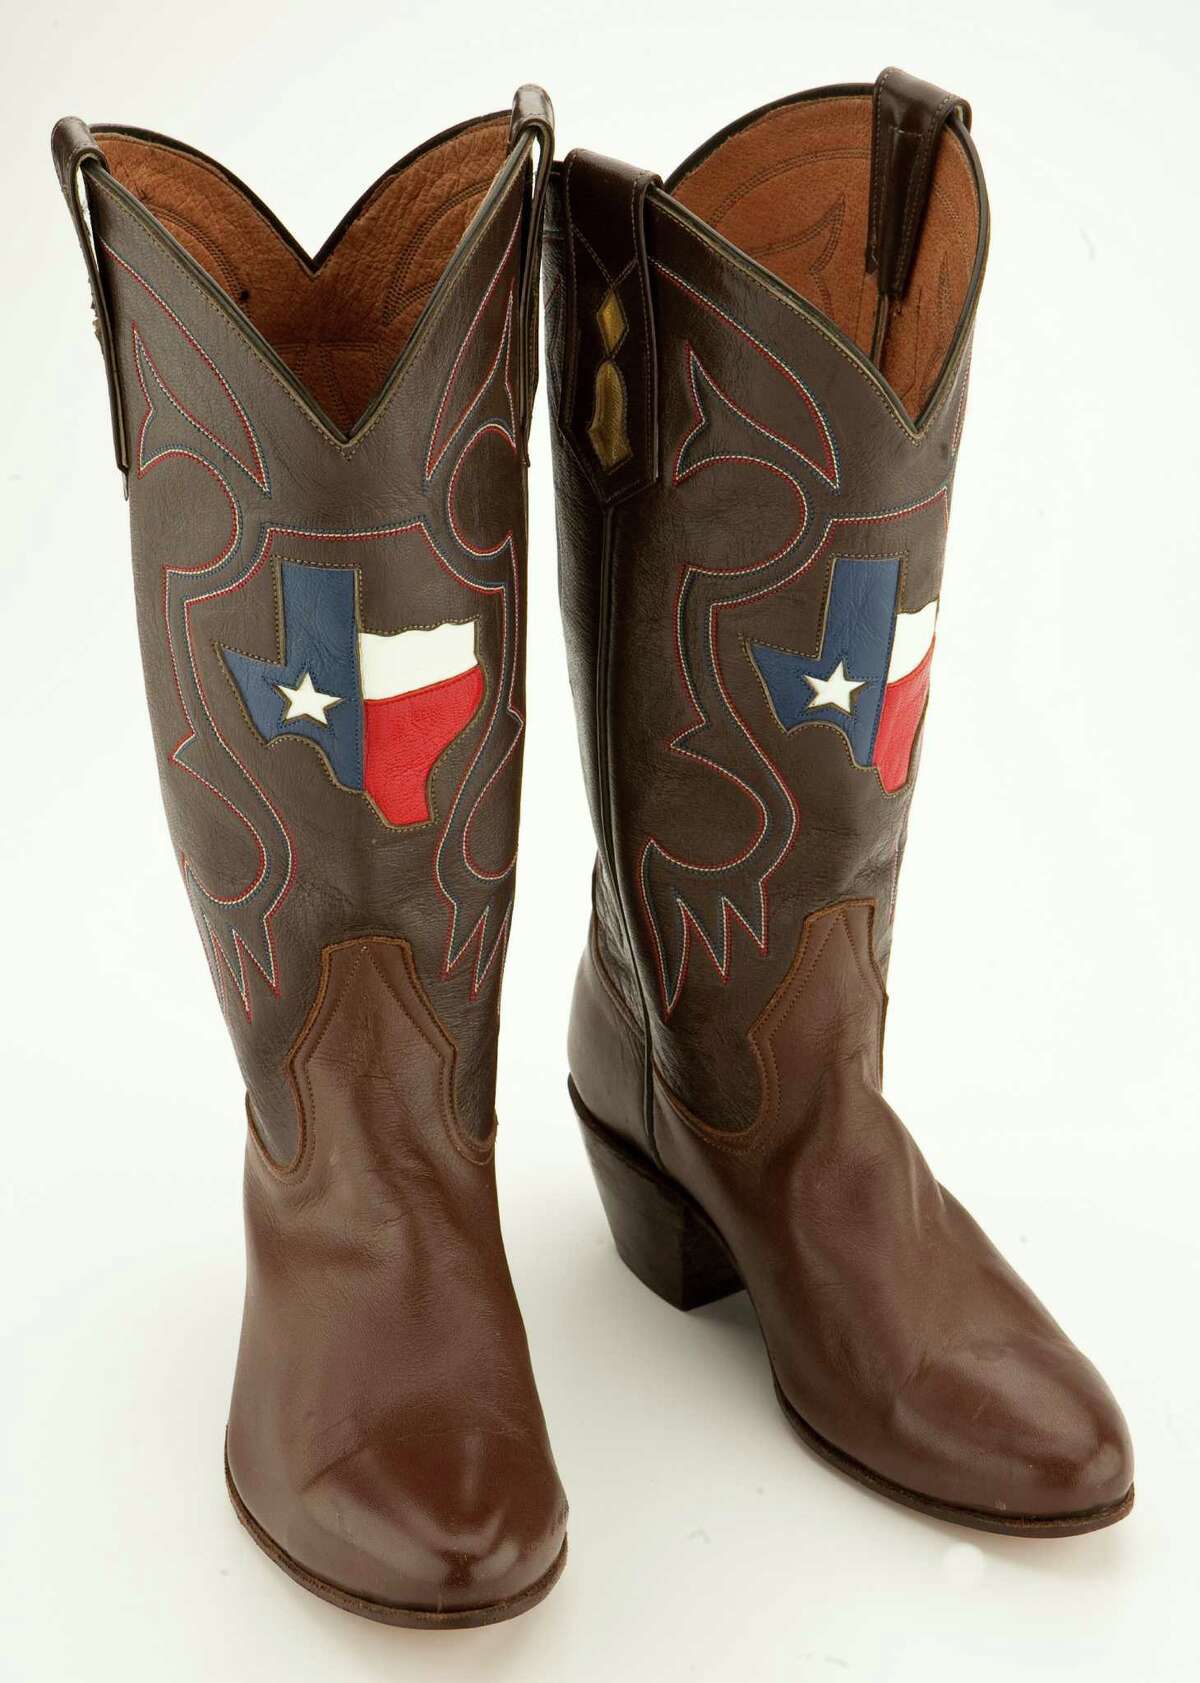 Legendary Houston boot maker Rocky 